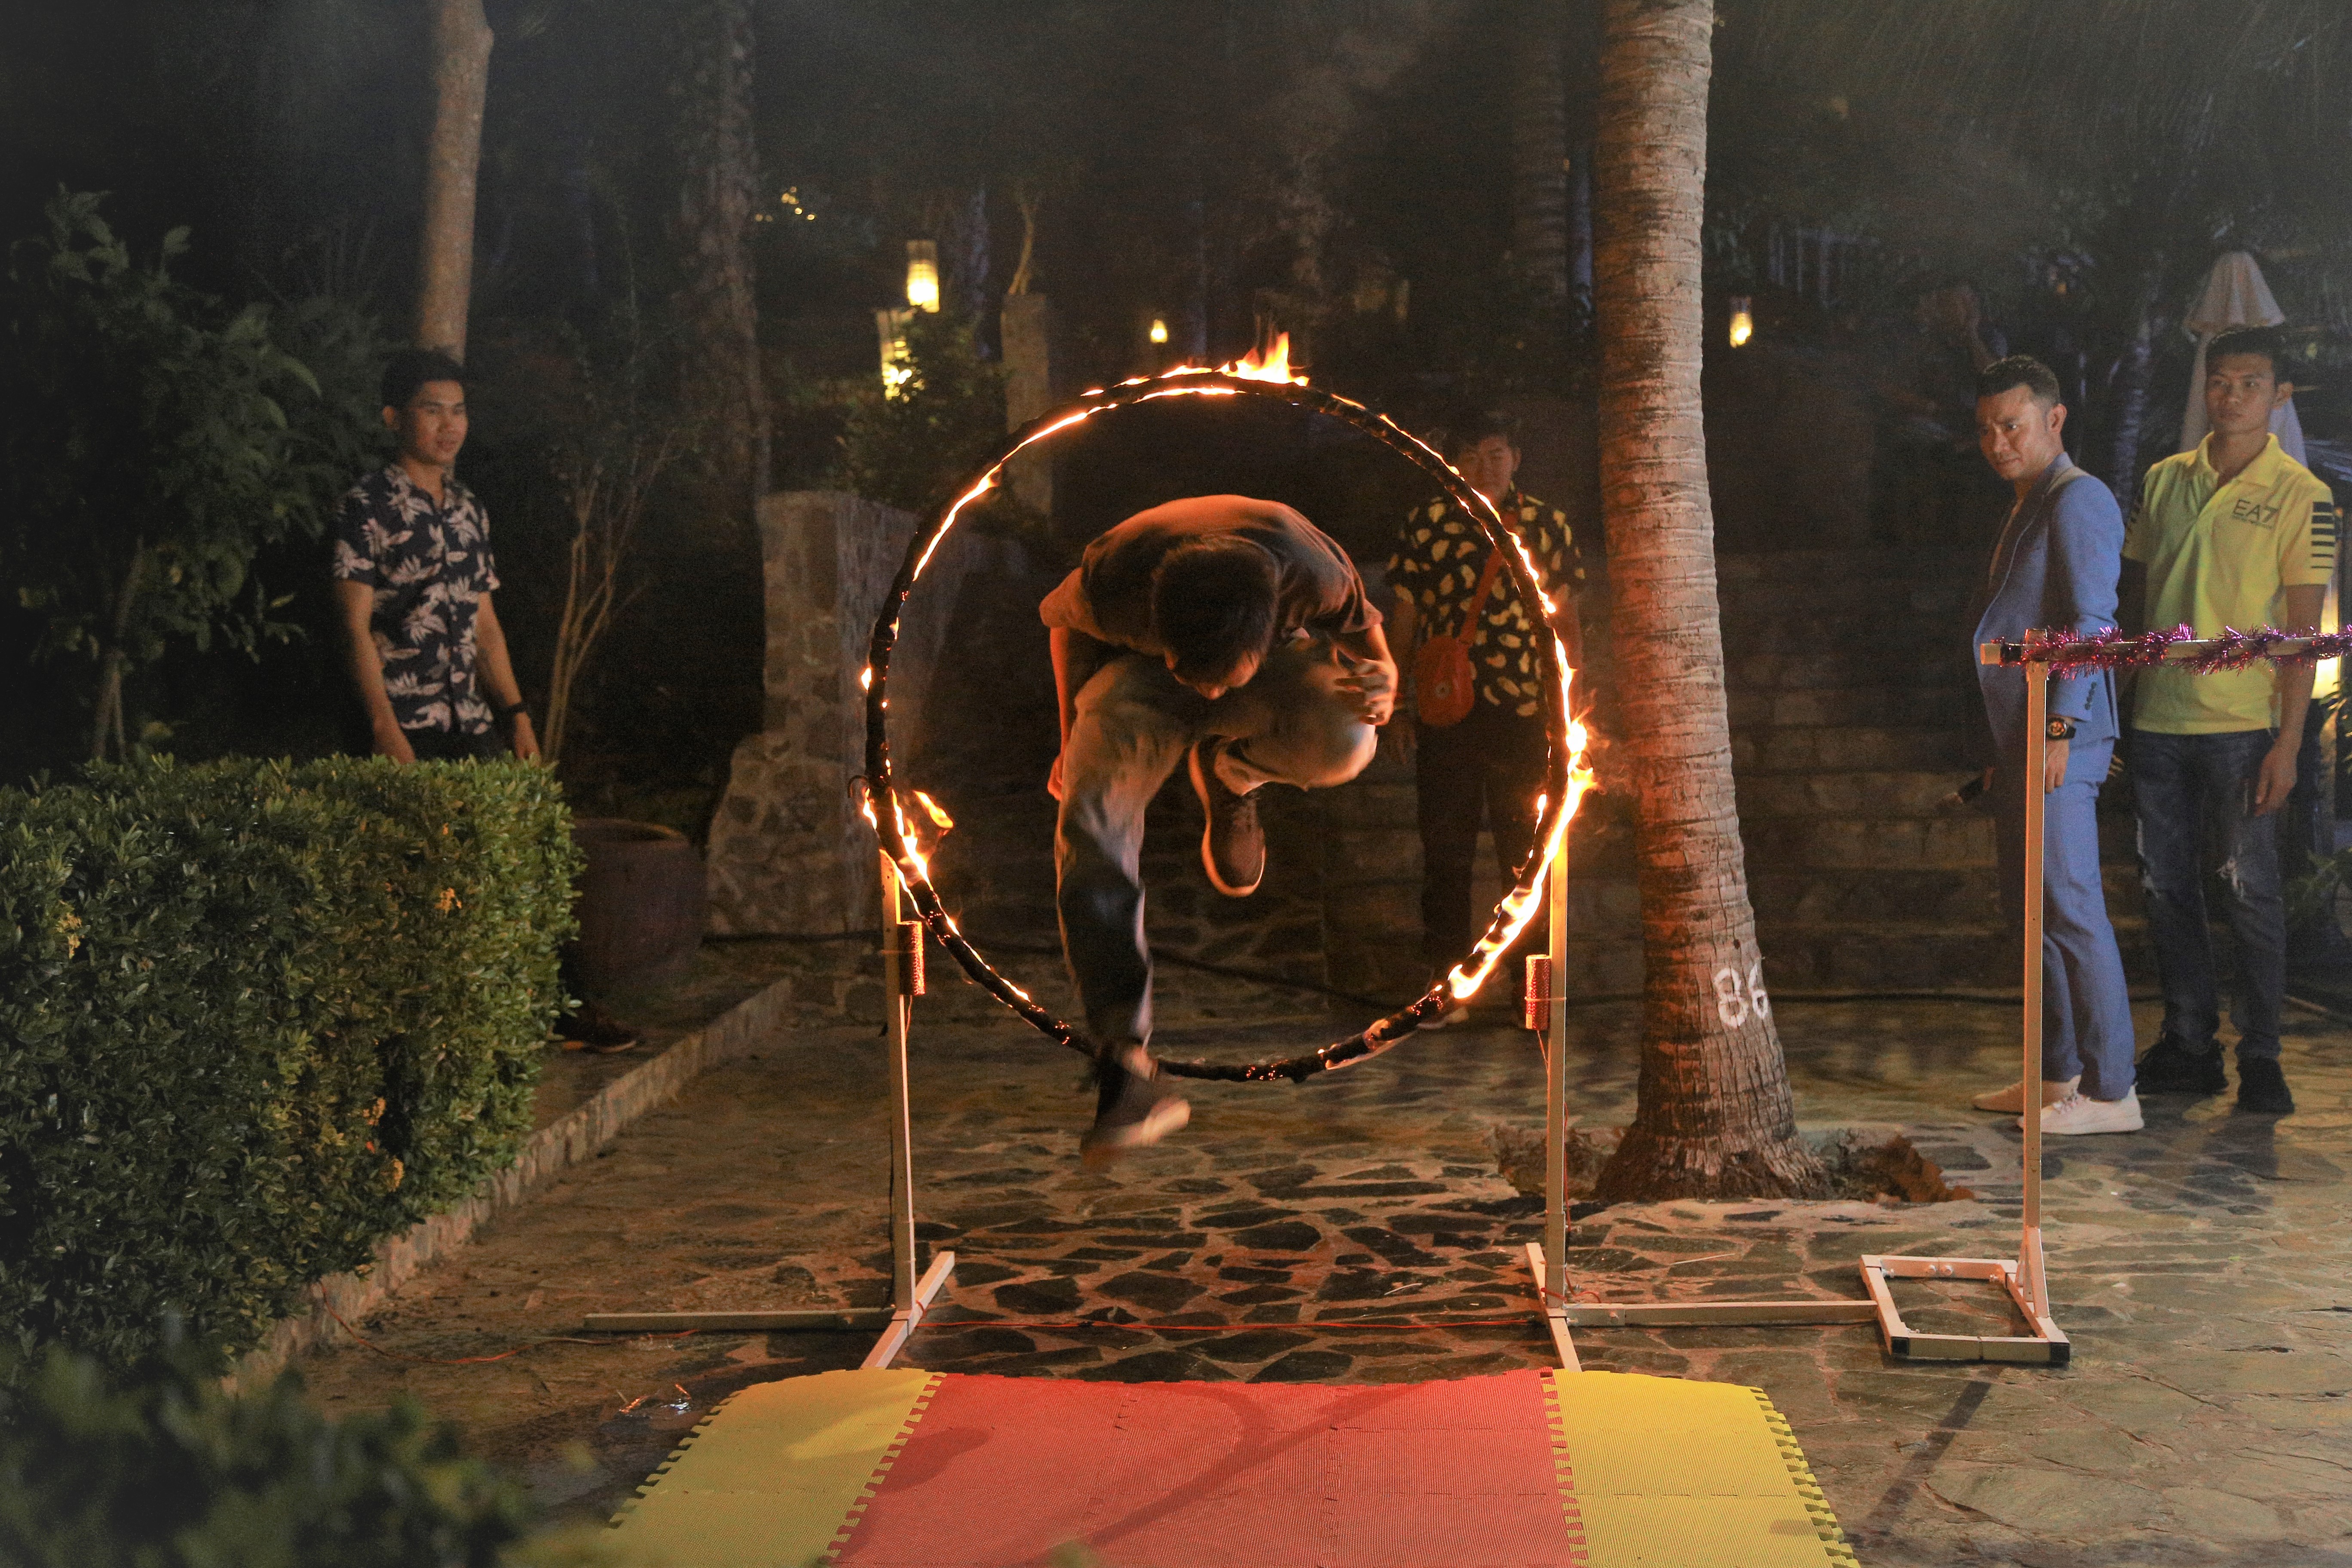 Nhảy qua vòng lửa tượng trưng cho sự nỗ lực vượt qua thử thách trong công việc và cuộc sống